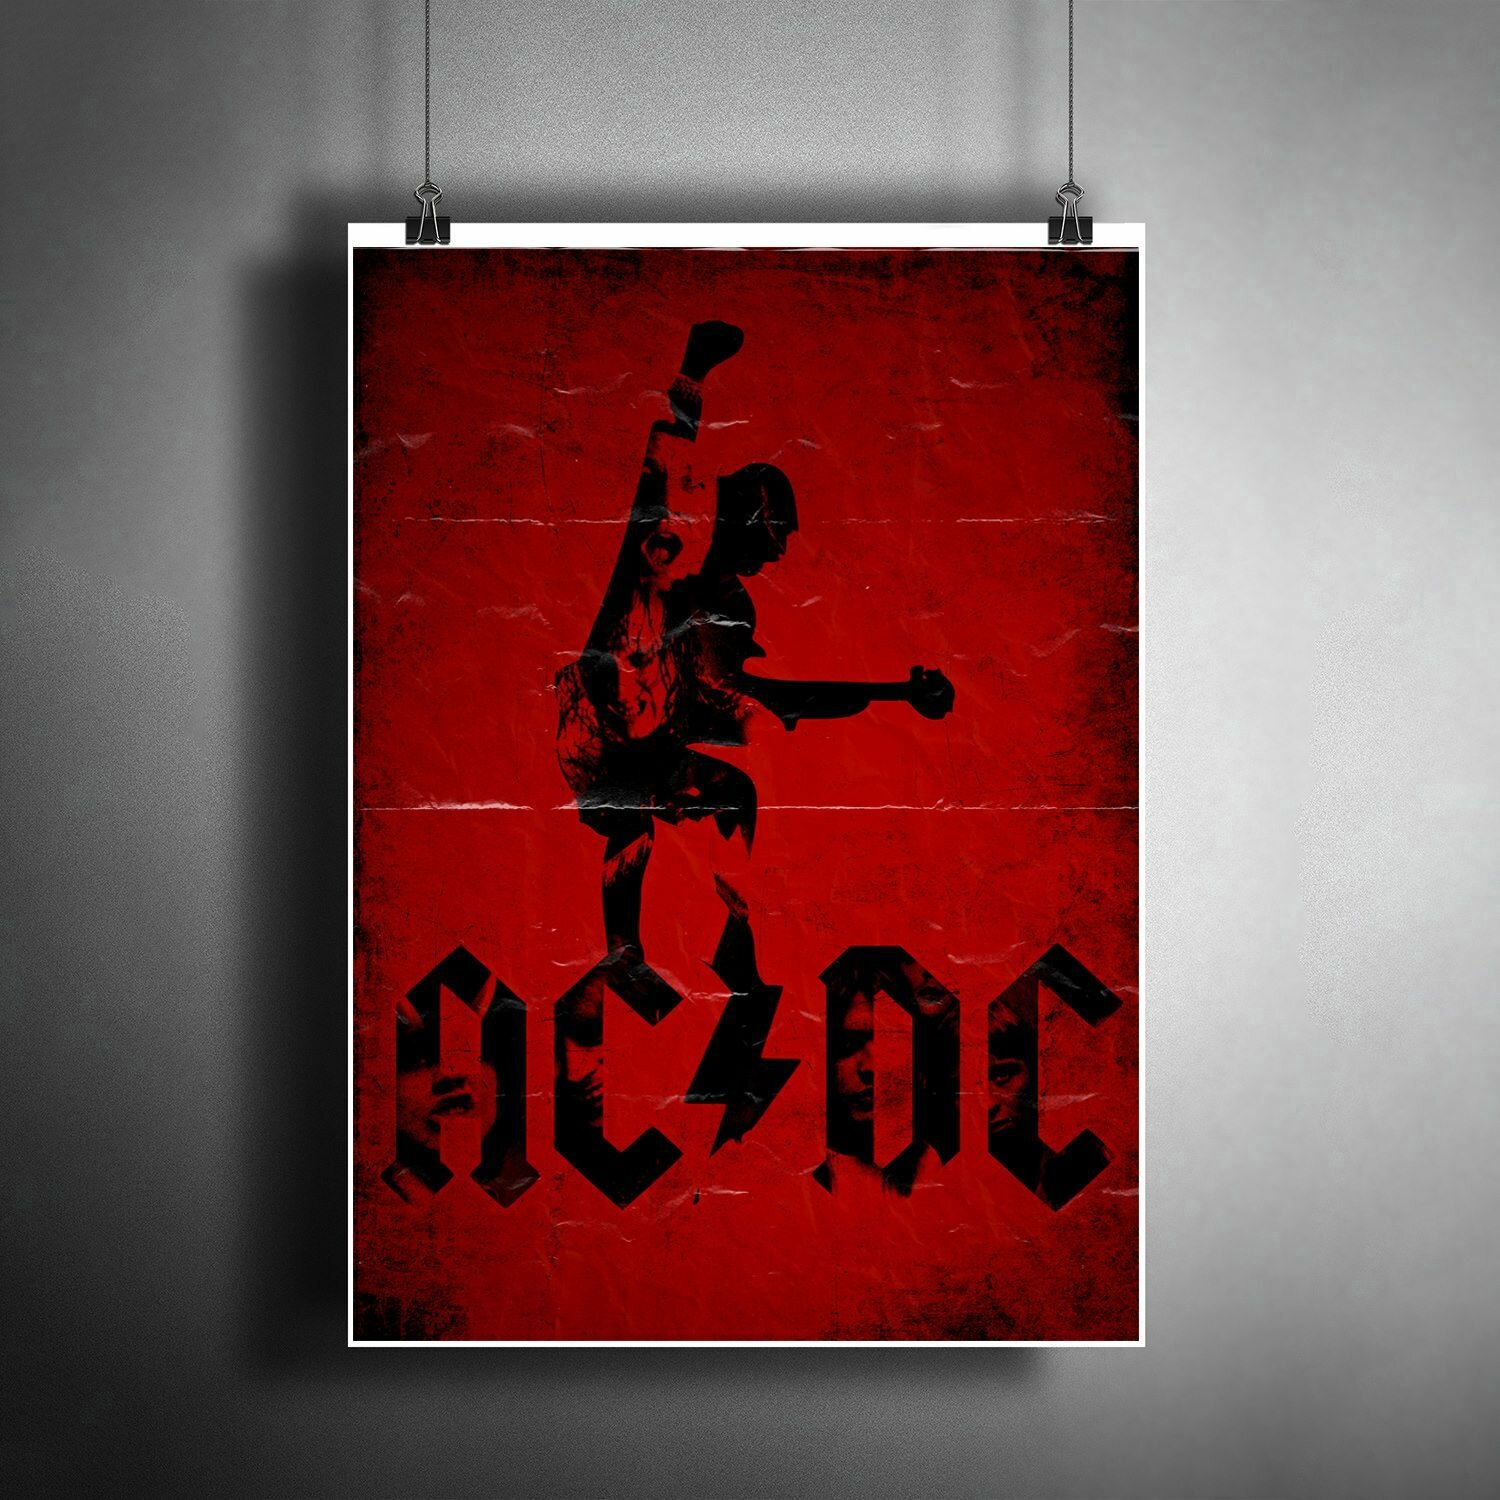 Постер плакат для интерьера "Музыка: Австралийская рок-группа AC/DC" / Декор дома офиса комнаты квартиры детской A3 (297 x 420 мм)